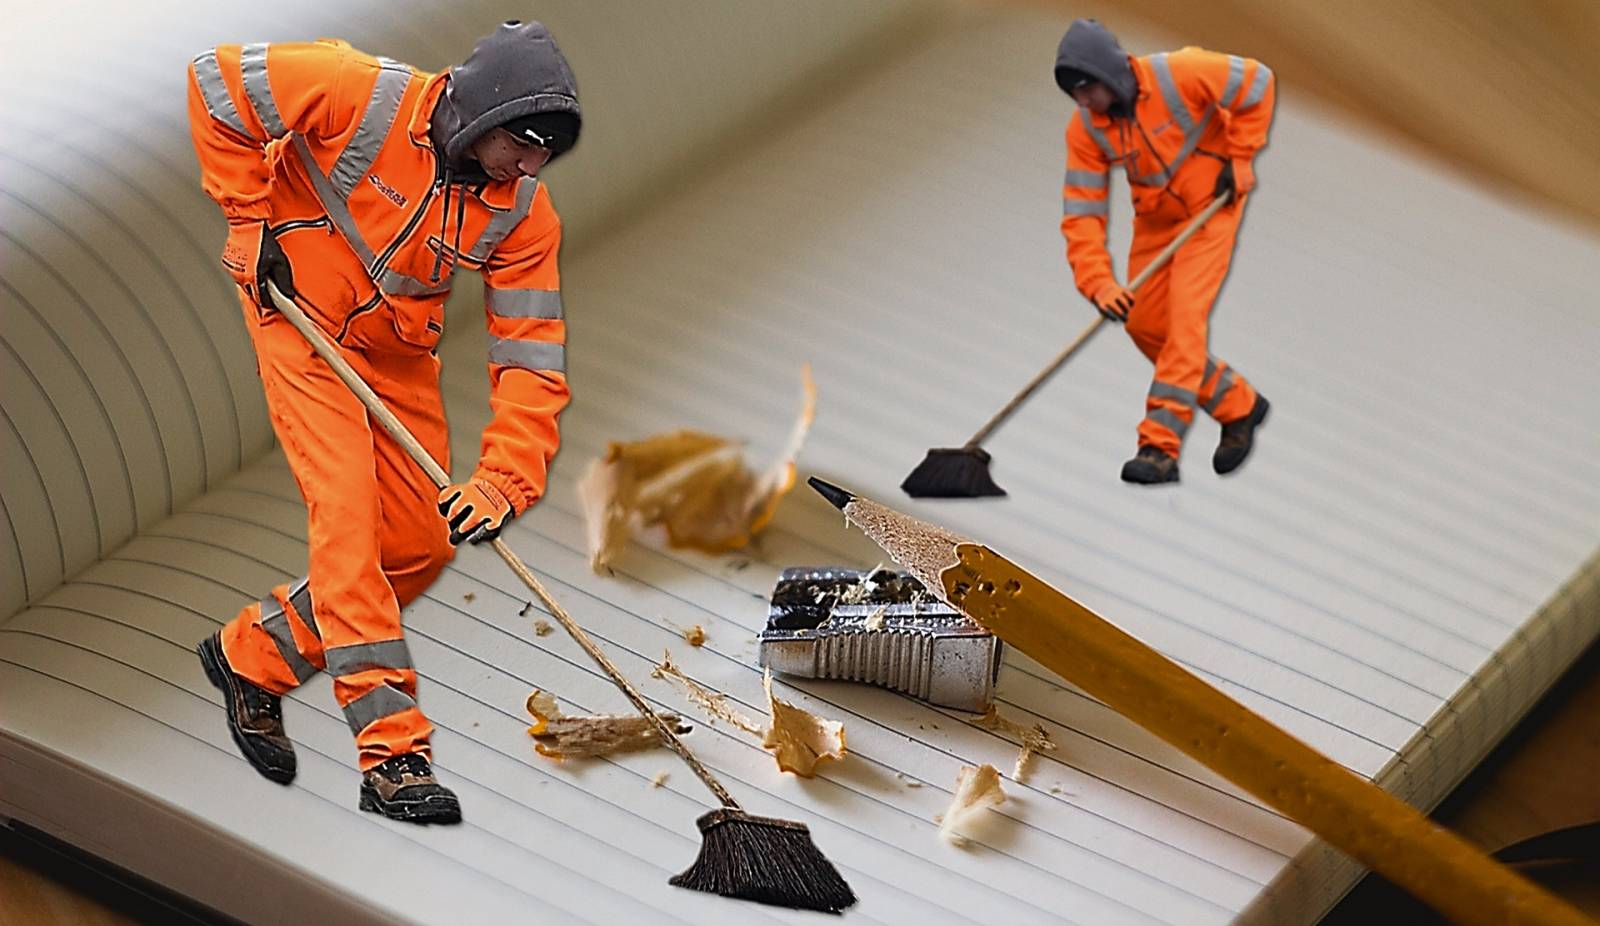 Nettoyer et décaper professionnellement les engins de chantier